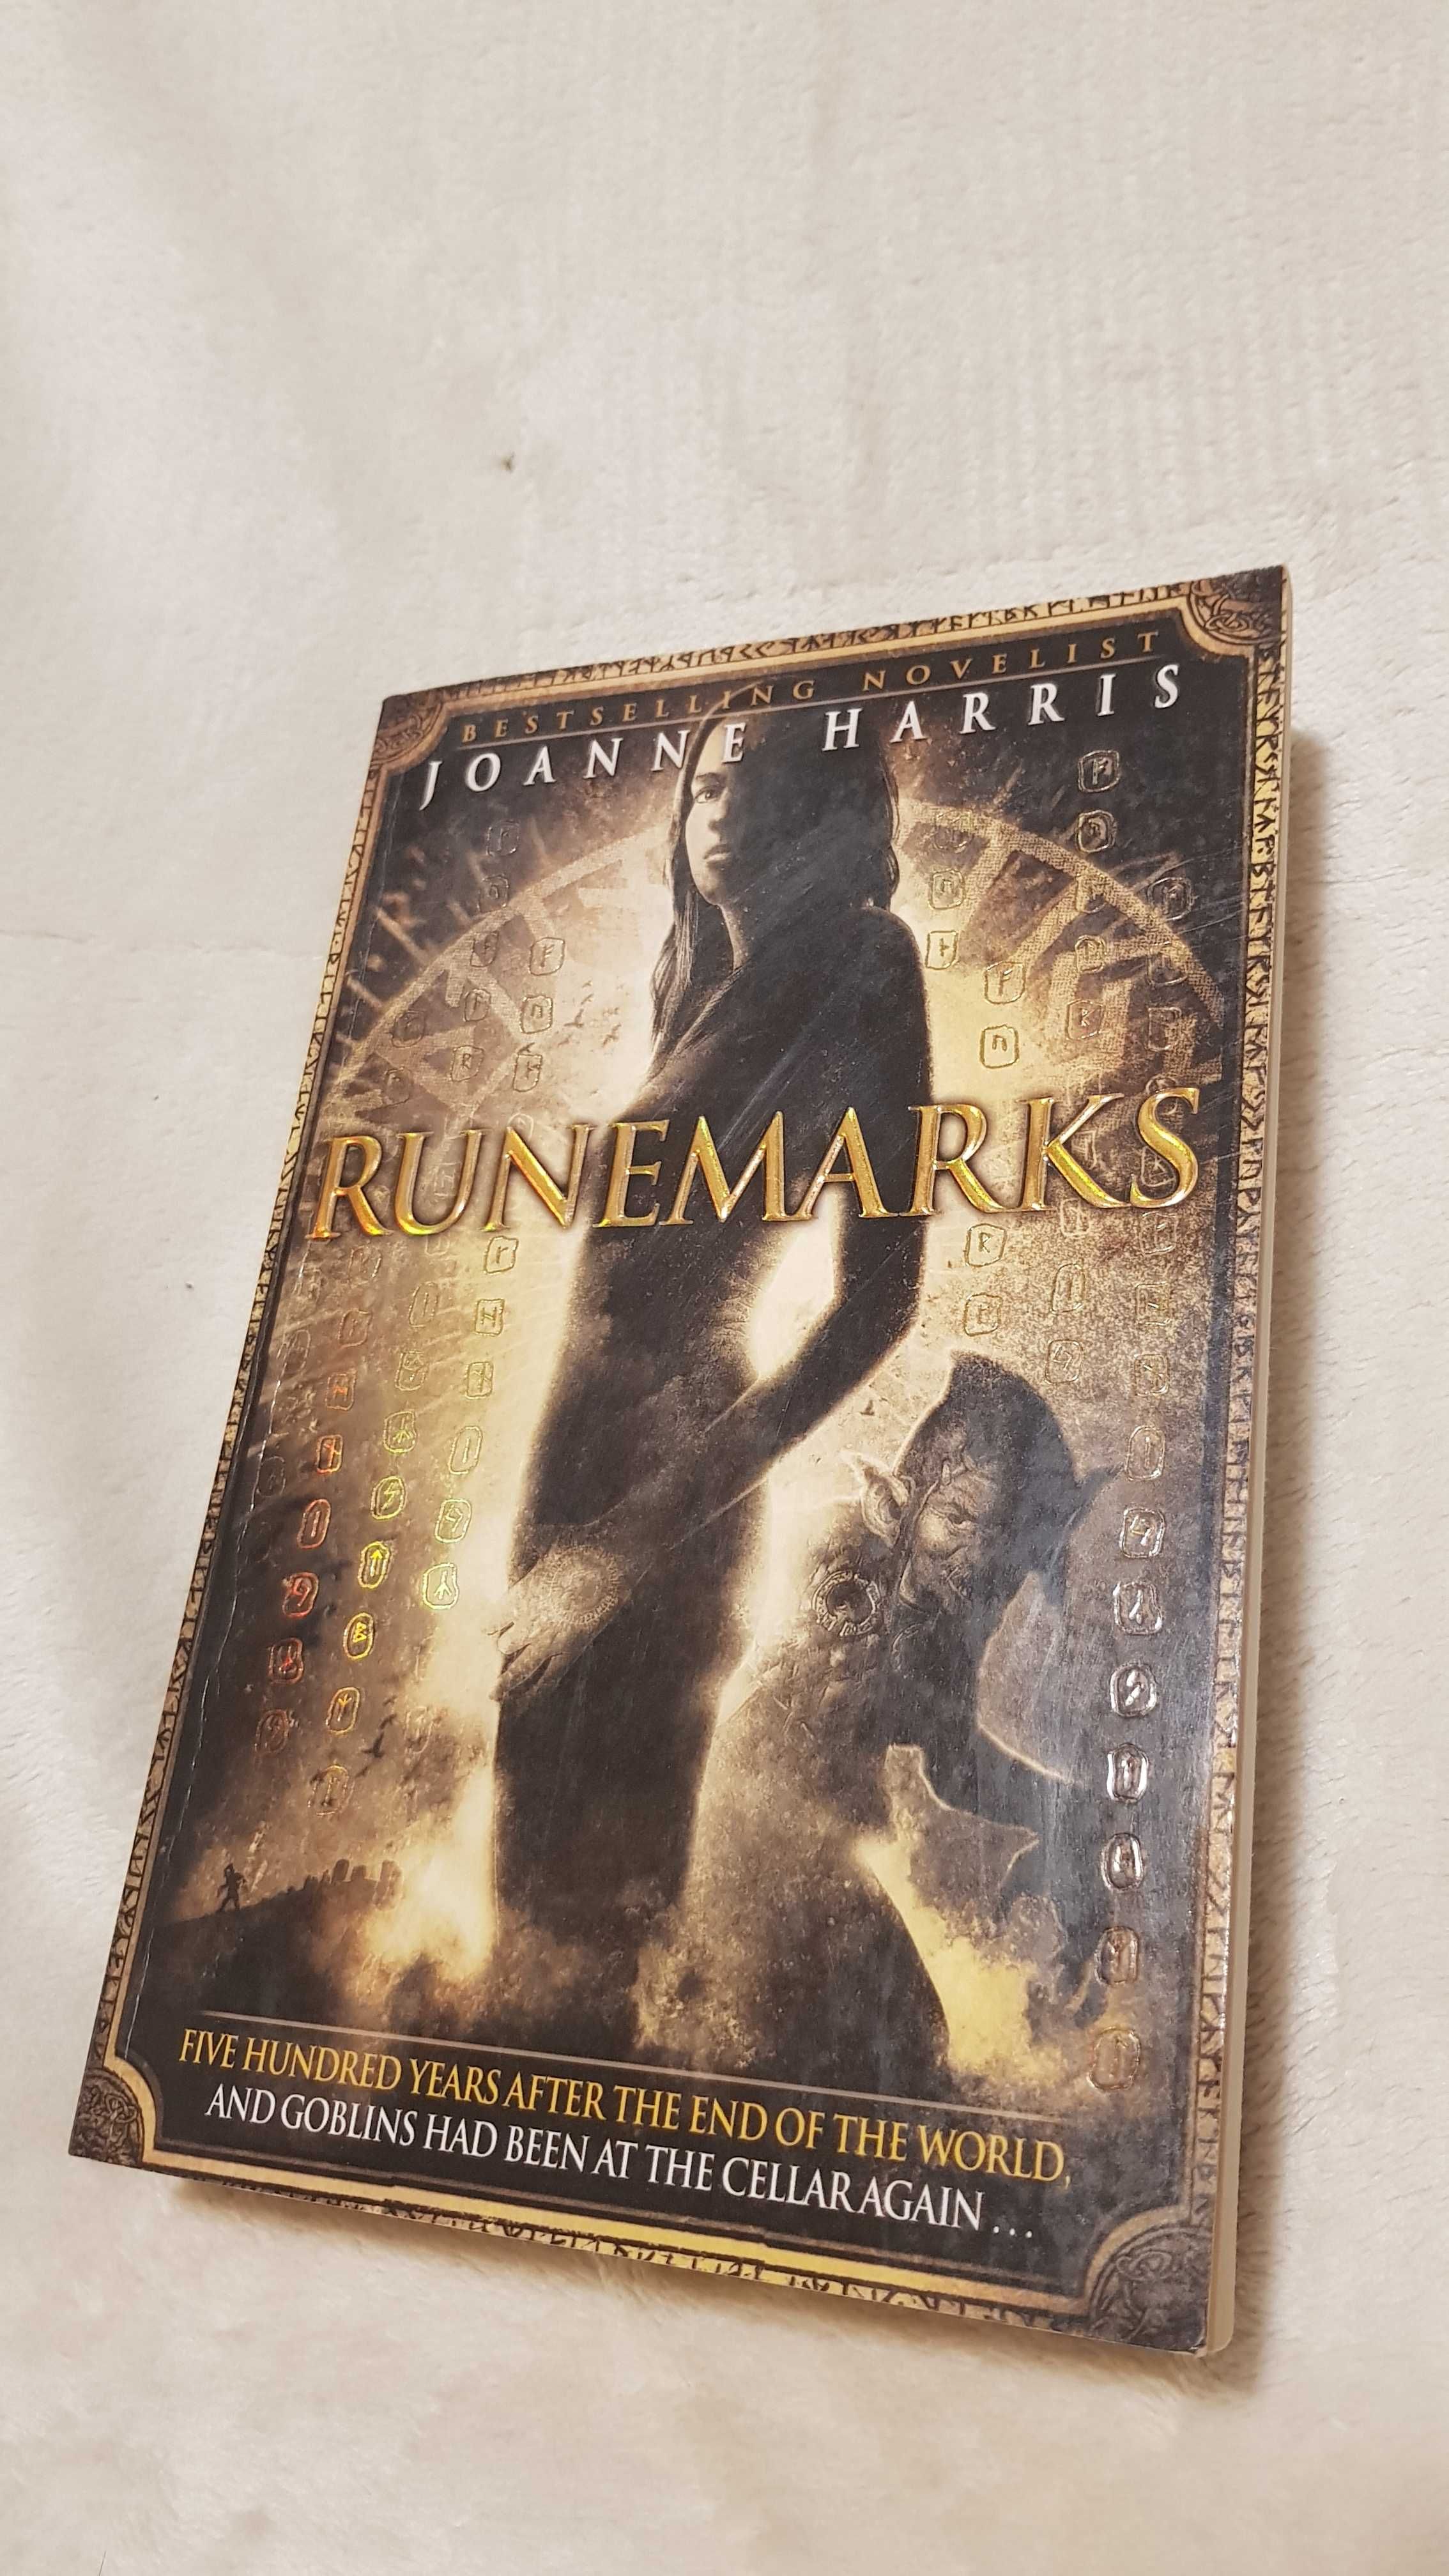 Vand cartea: Runemarks de Joanne M. Harris in engleza, fantasy